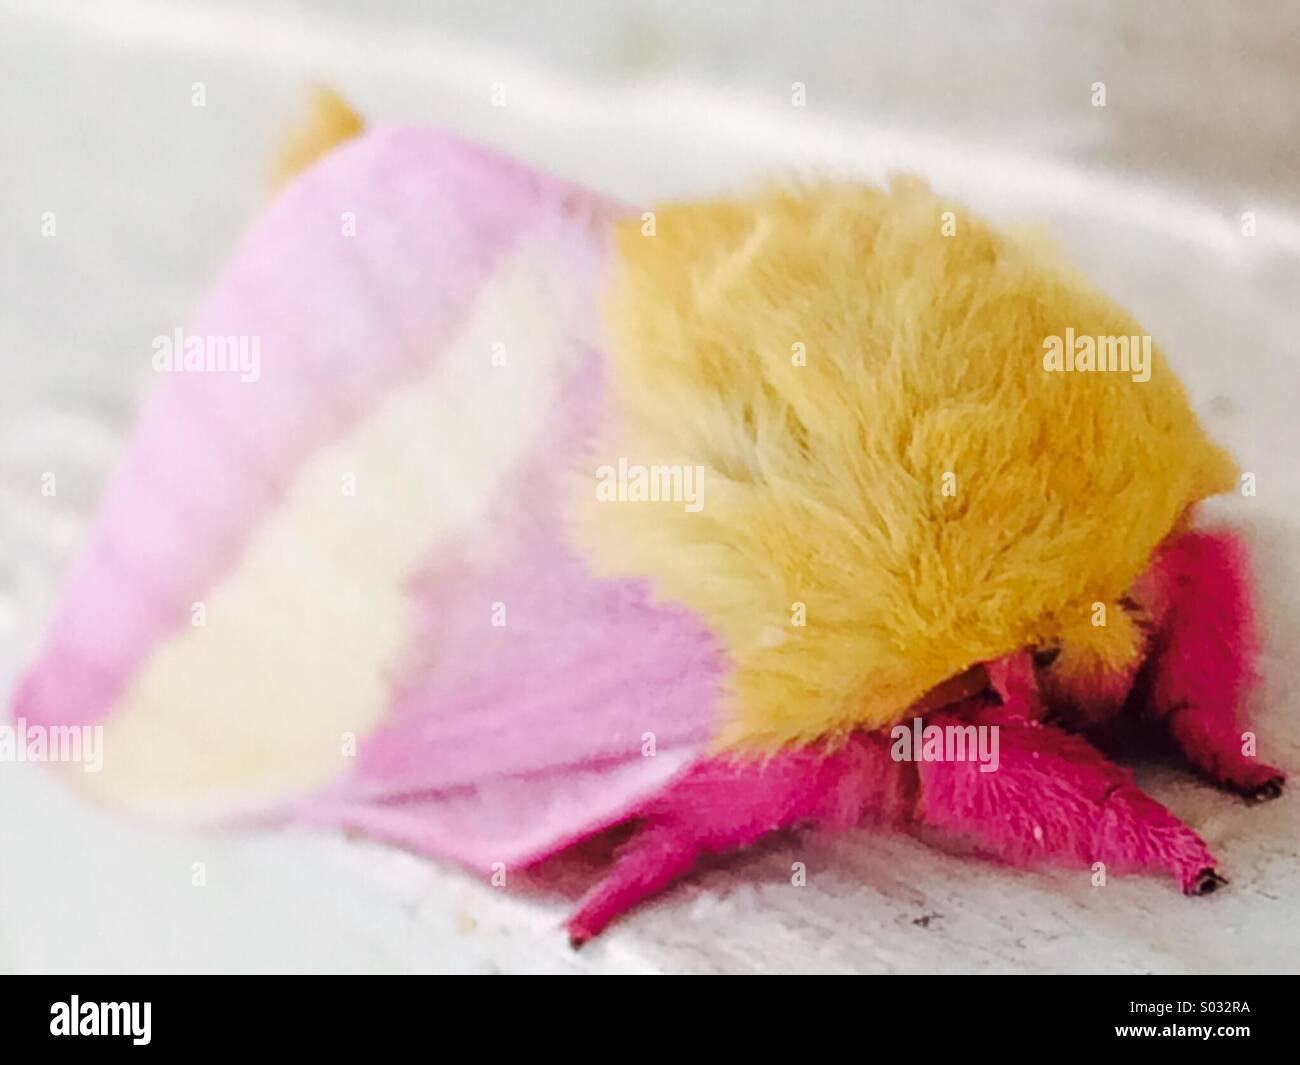 La increíblemente bella Rosy Maple Moth muestra creatividad artística de Dios. Foto de stock